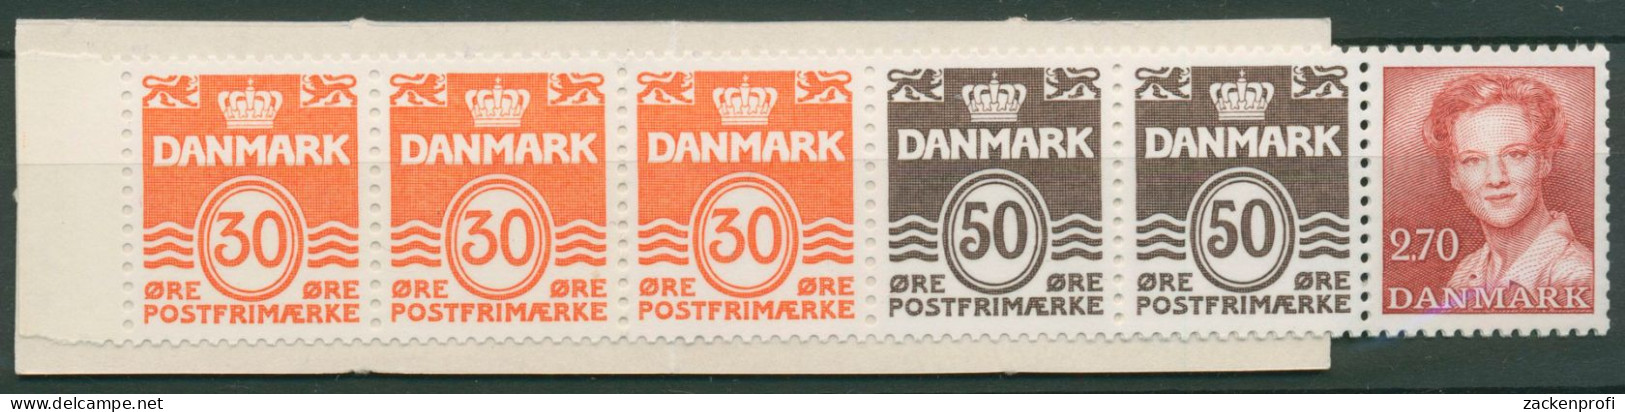 Dänemark 1984 Ziffern/Königin Markenheftchen MH 32 Postfrisch (C60838) - Booklets